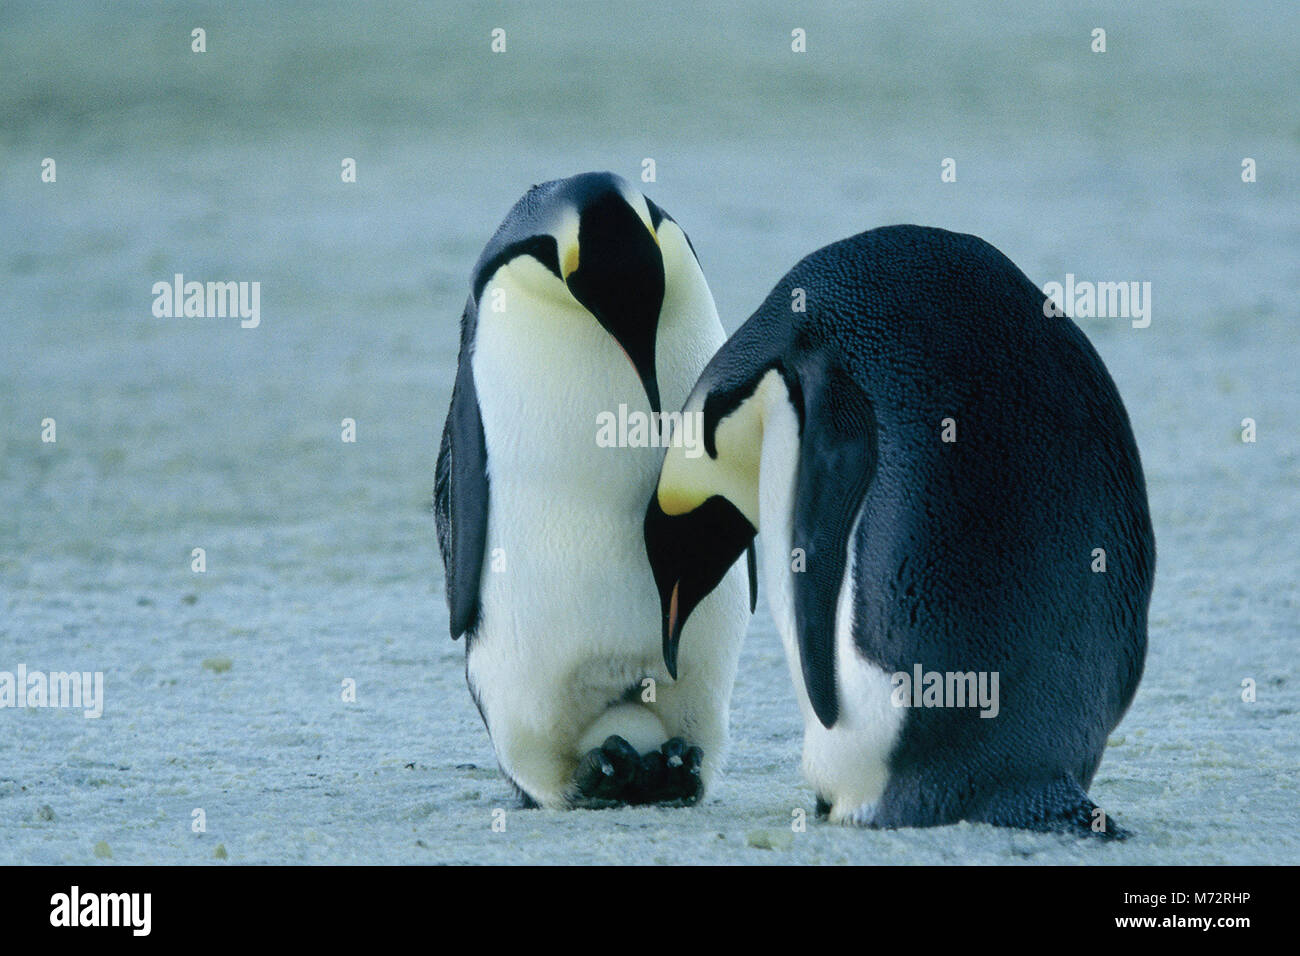 DIE REISE DER PINGUINE aka. La marche de l'empereur, Frankreich 2004 Luc Jacquet Tier-Dokumentation über den außergewöhnlichen Lebenszyklus der Pinguine in der Antarktis. Stock Photo